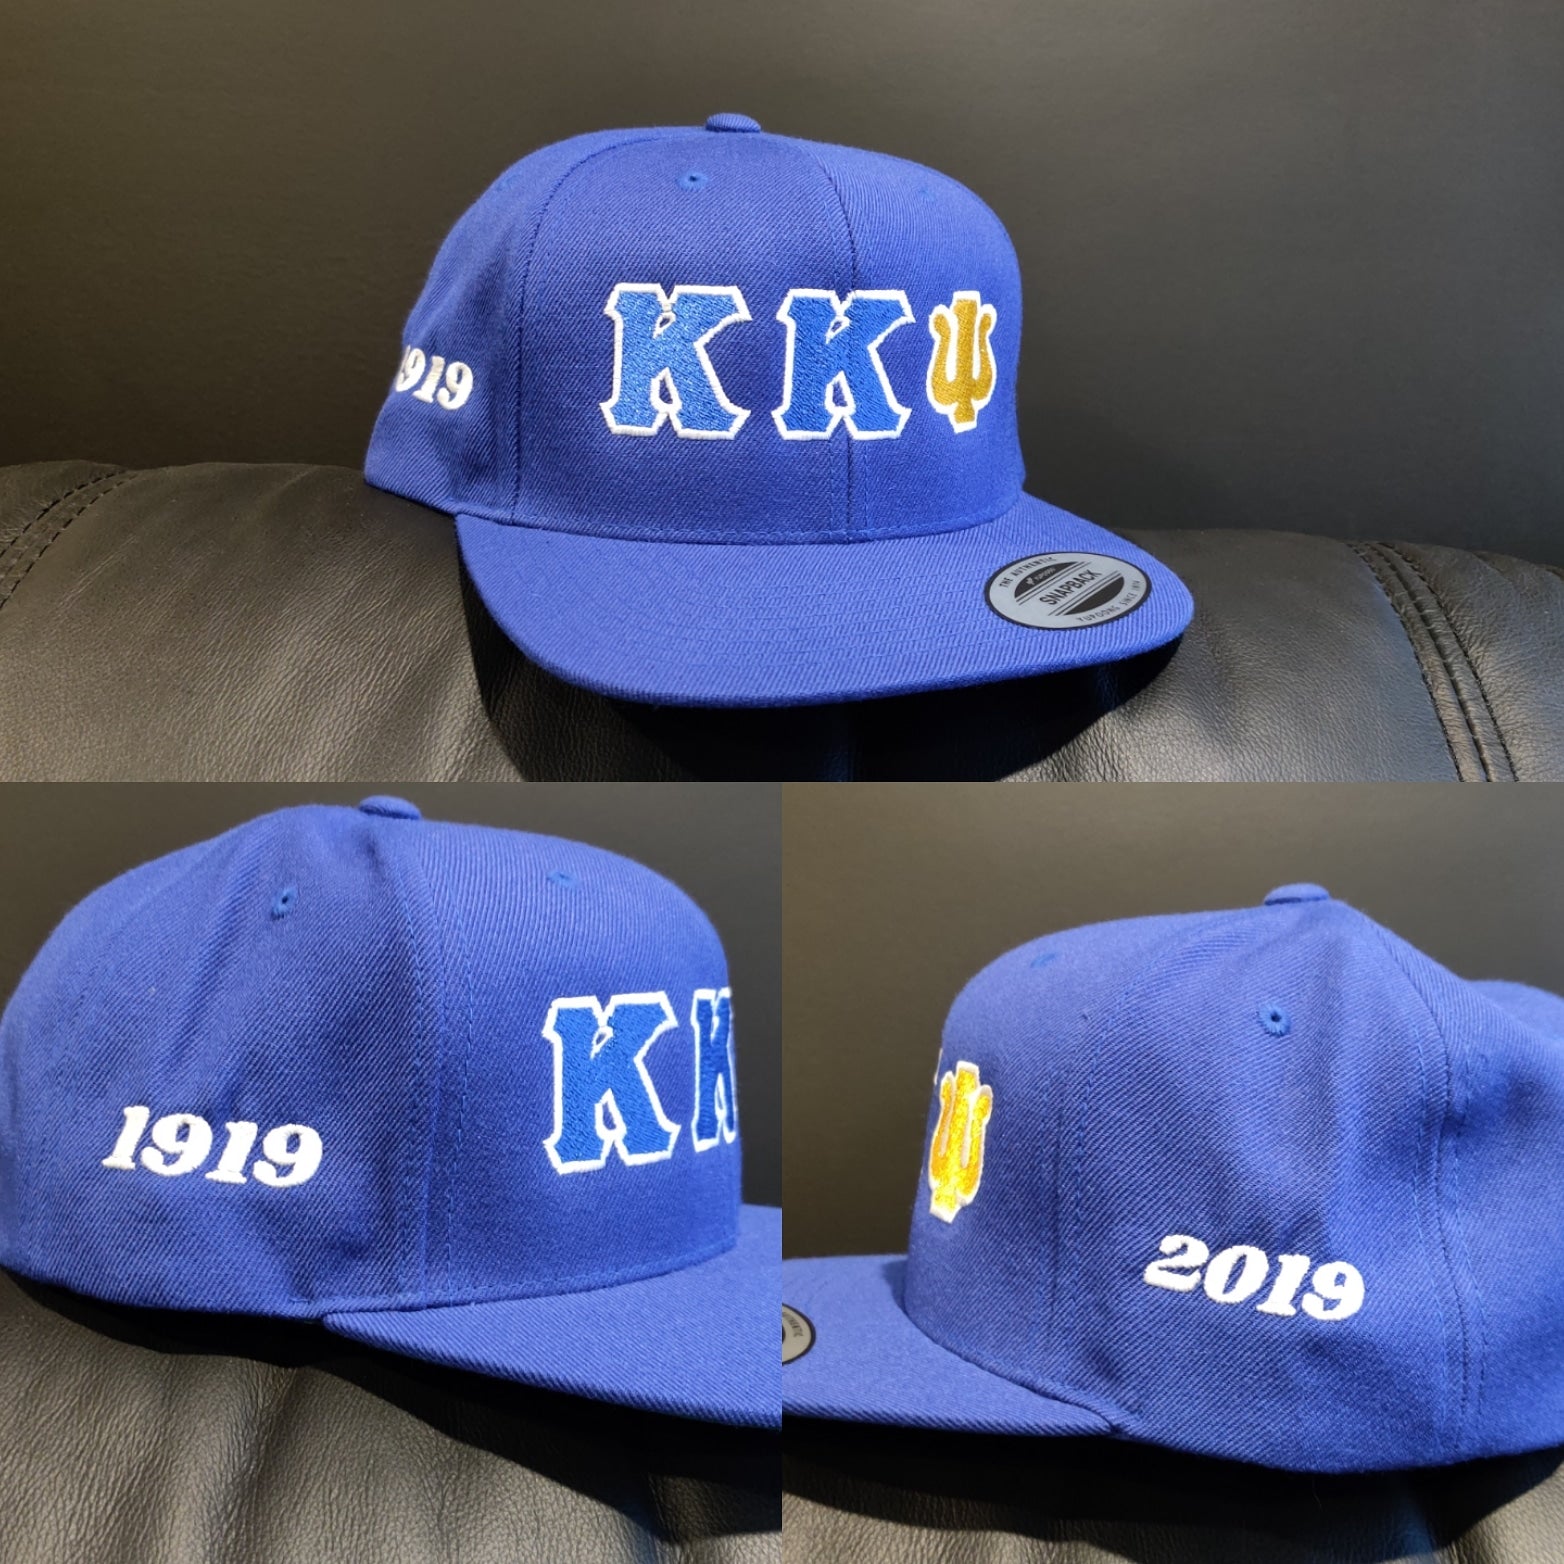 Kappa Kappa Psi - 1919-2019 - Snapback Hat